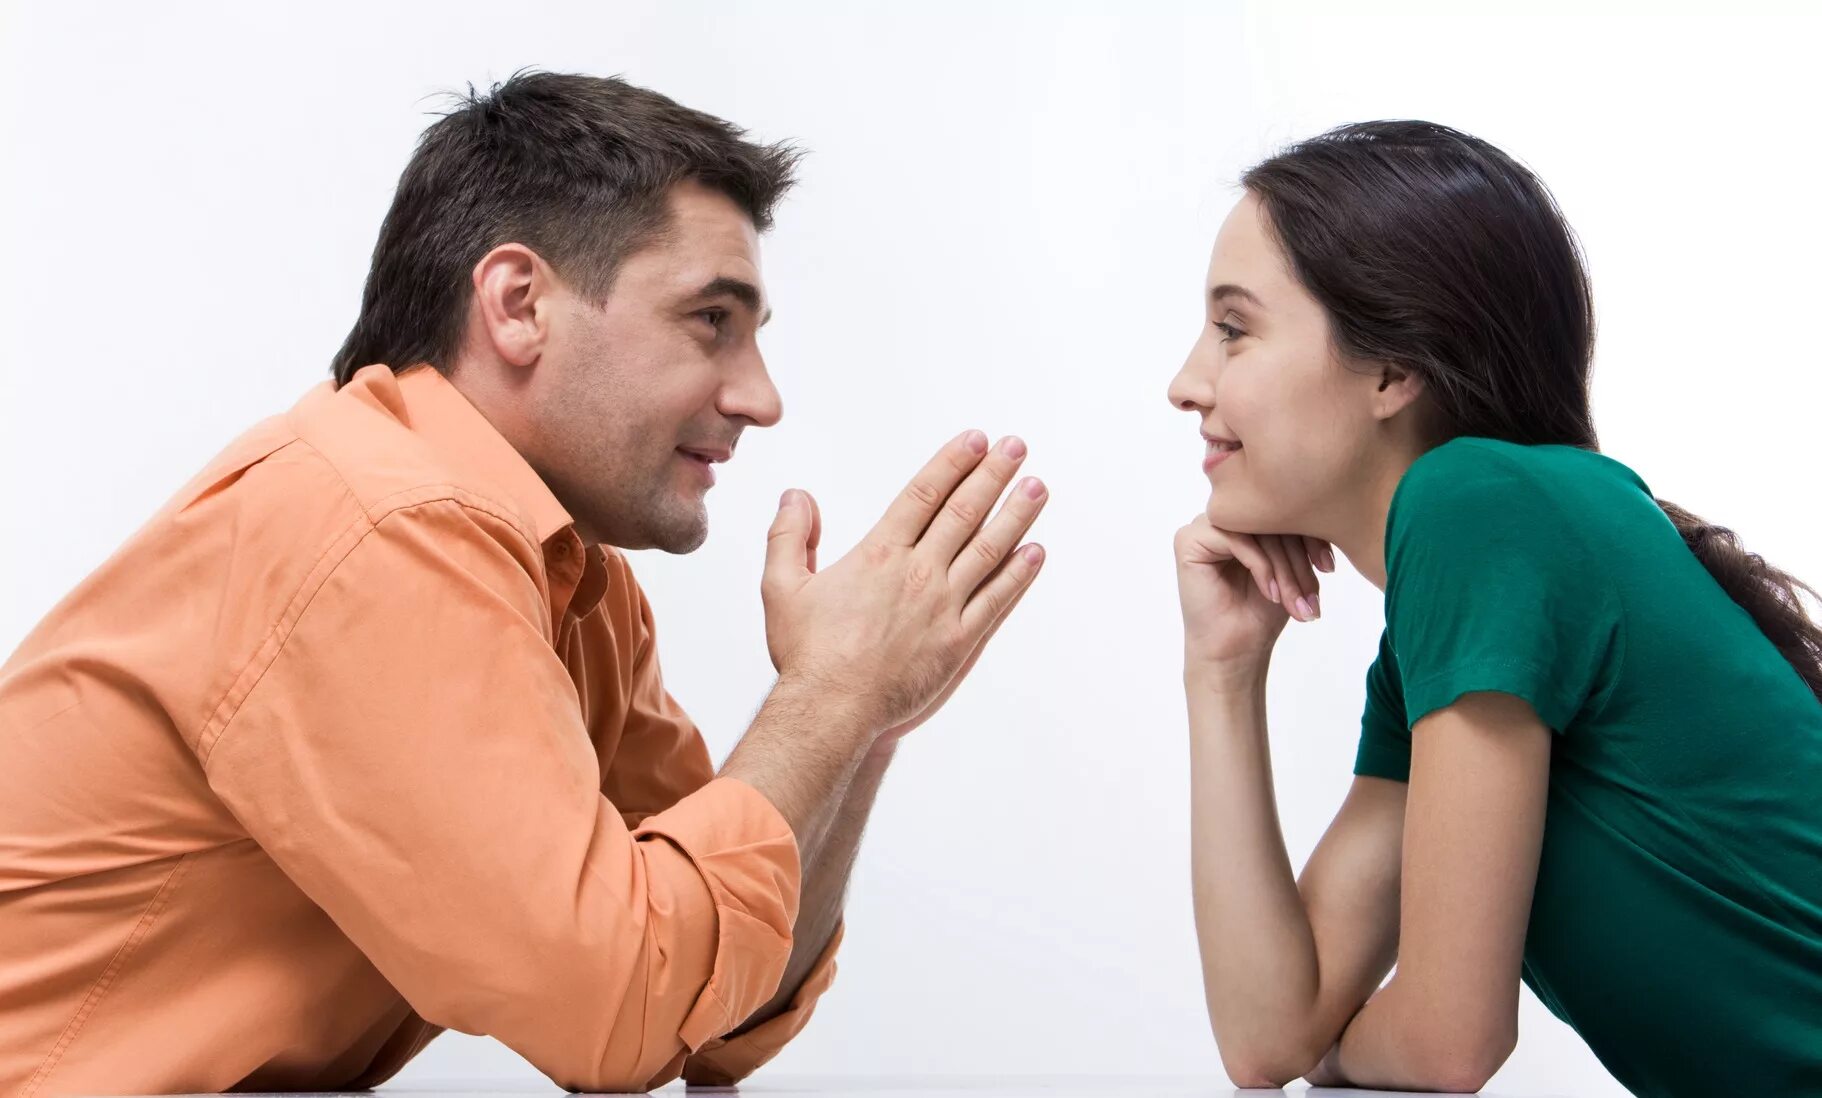 Разговор между мужчиной и женщиной. Общение людей. Взаимопонимание в общении. Беседа мужчины и женщины.